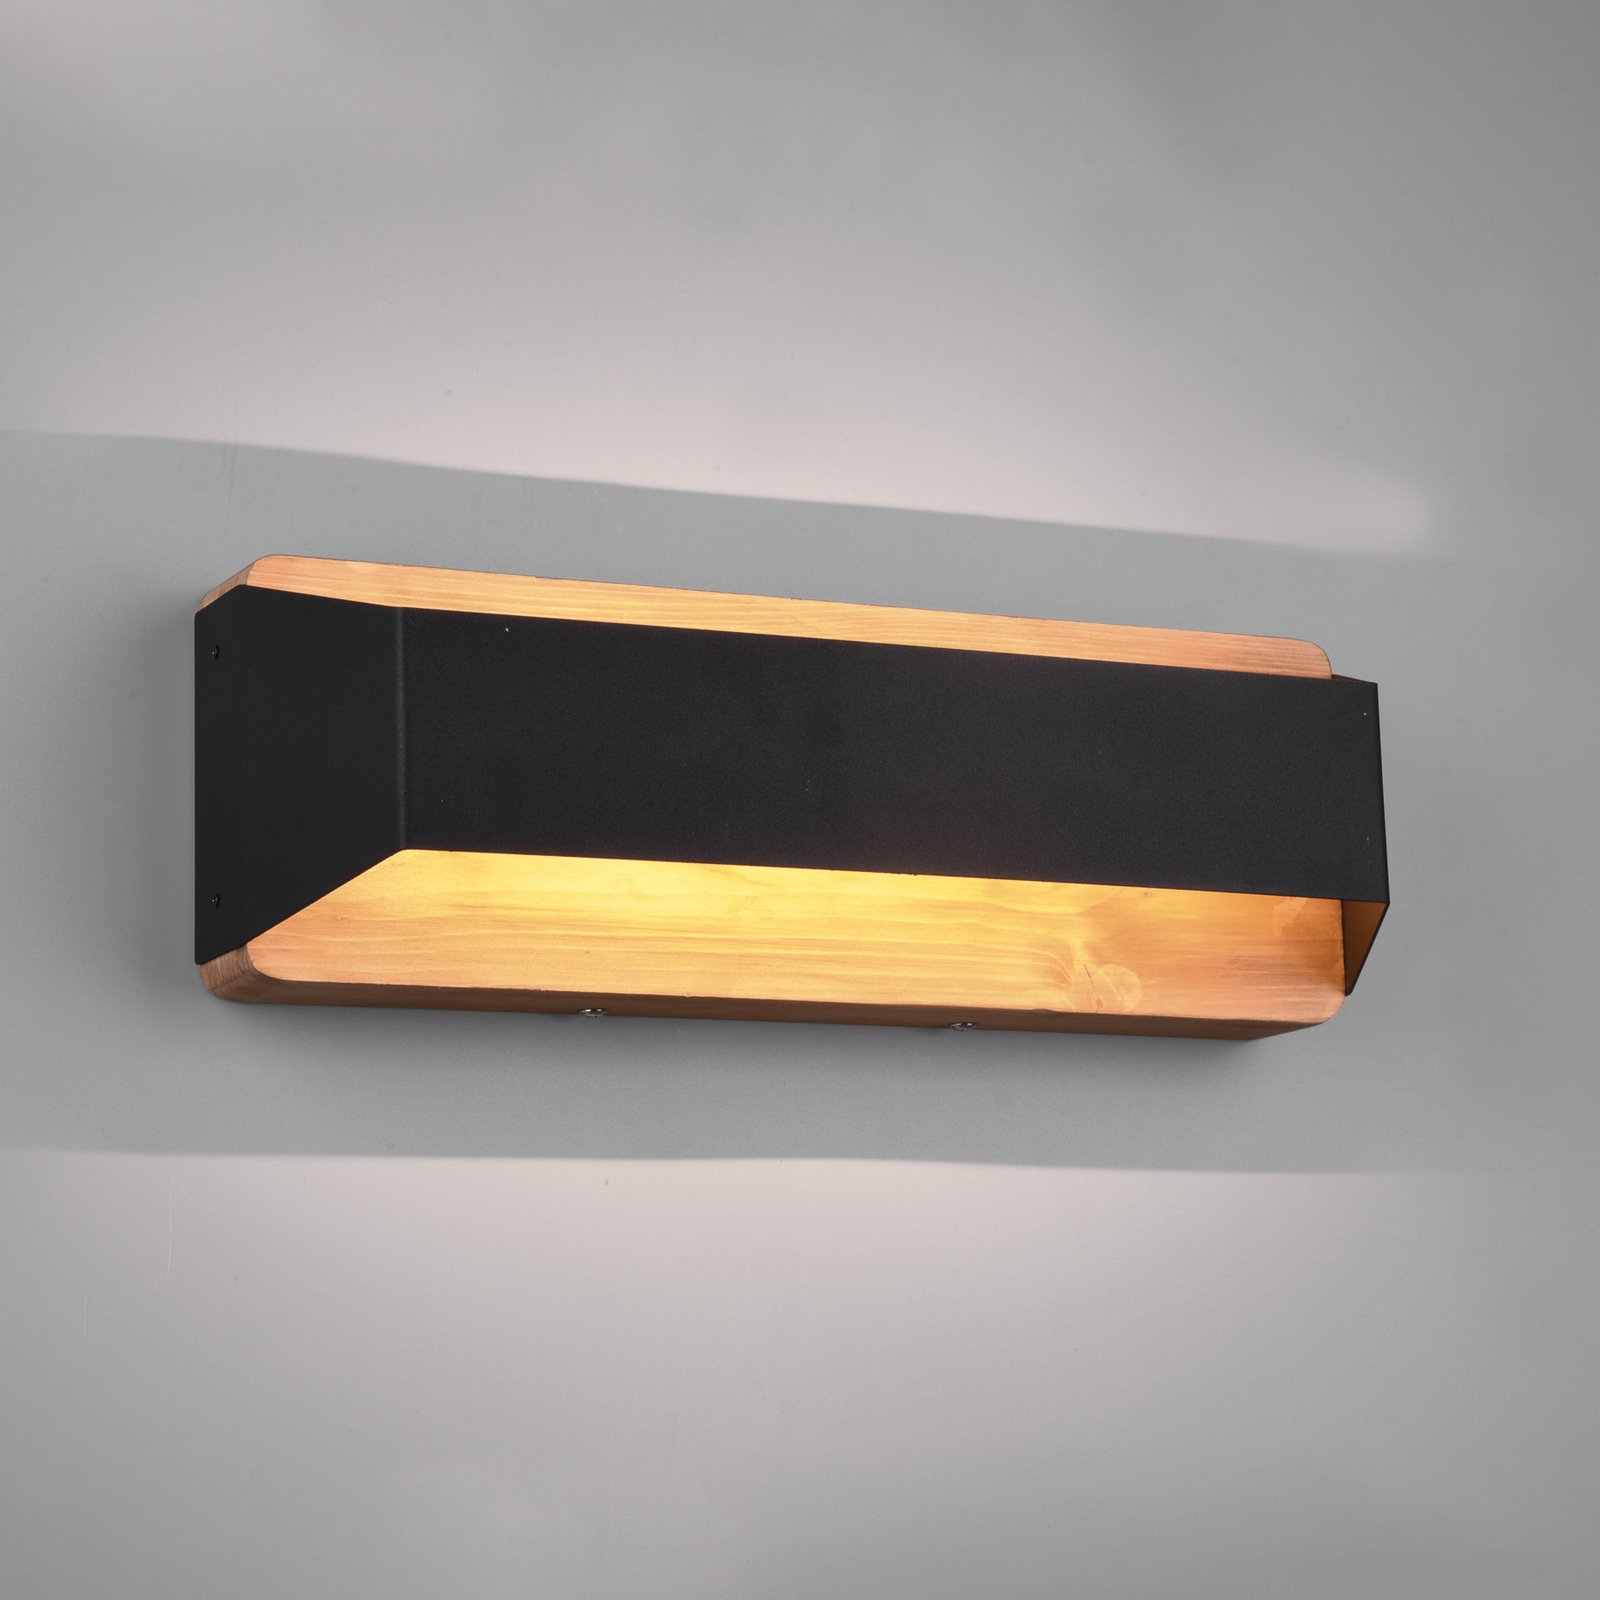 Nástenné LED svetlo Arino, čierna, šírka 35,2 cm